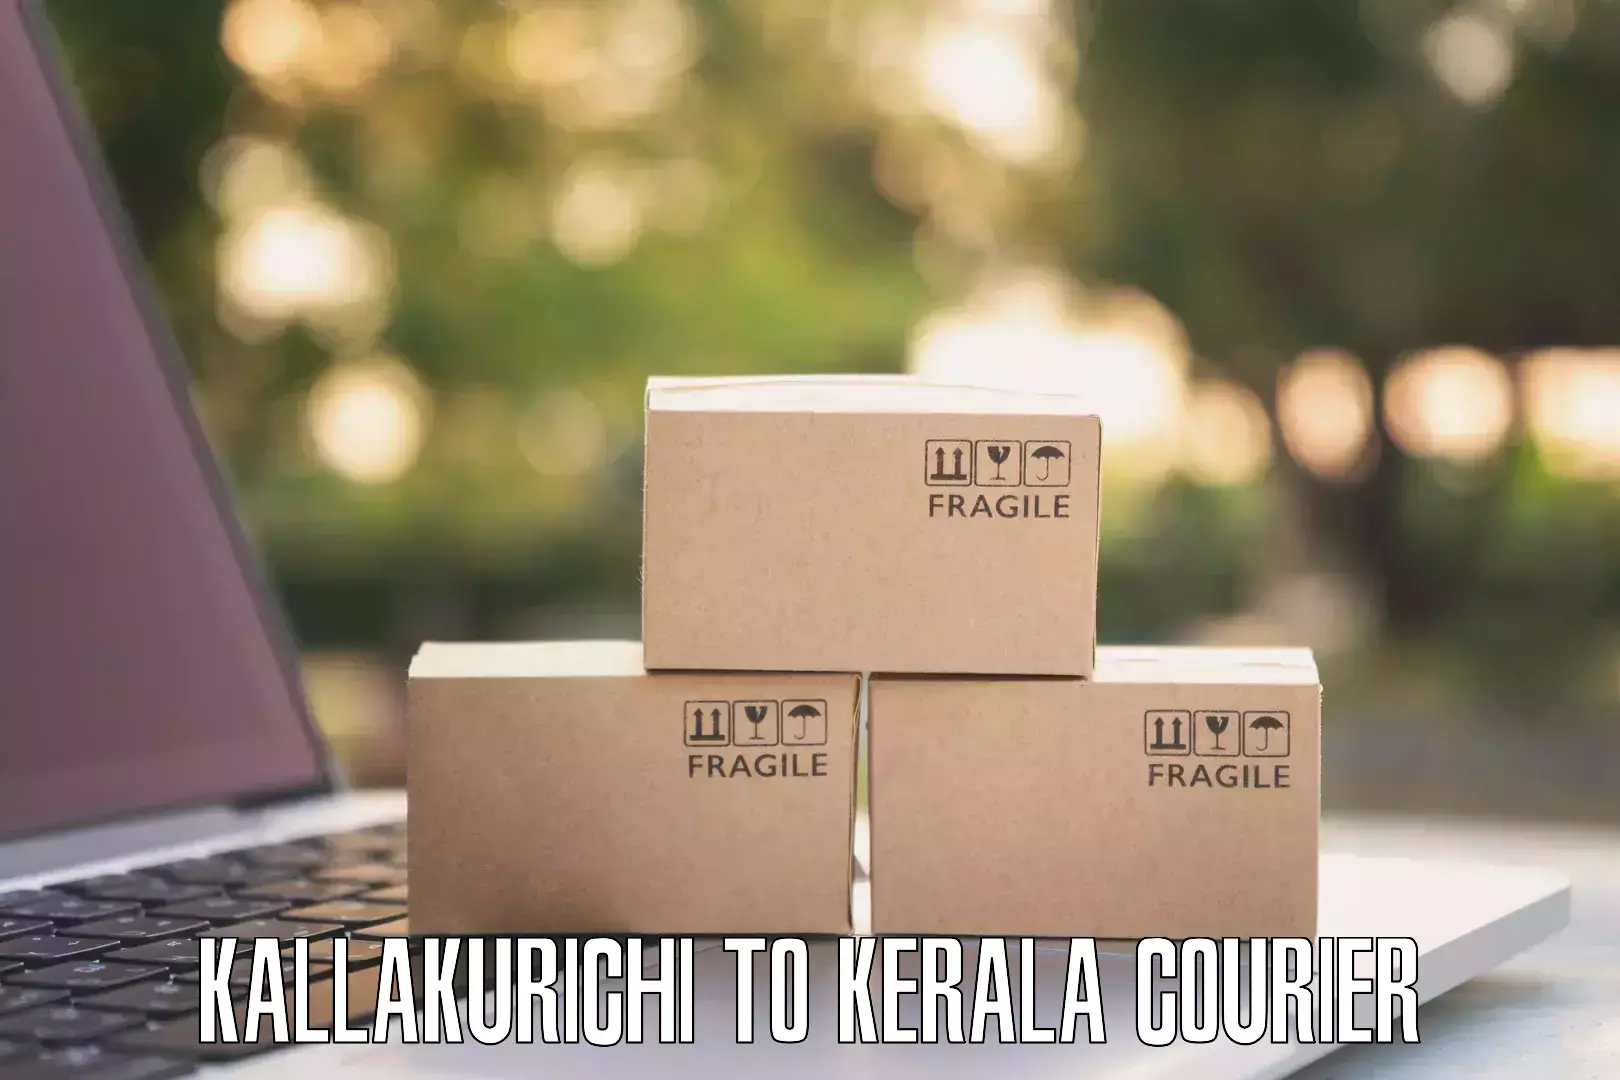 Courier membership Kallakurichi to Piravom